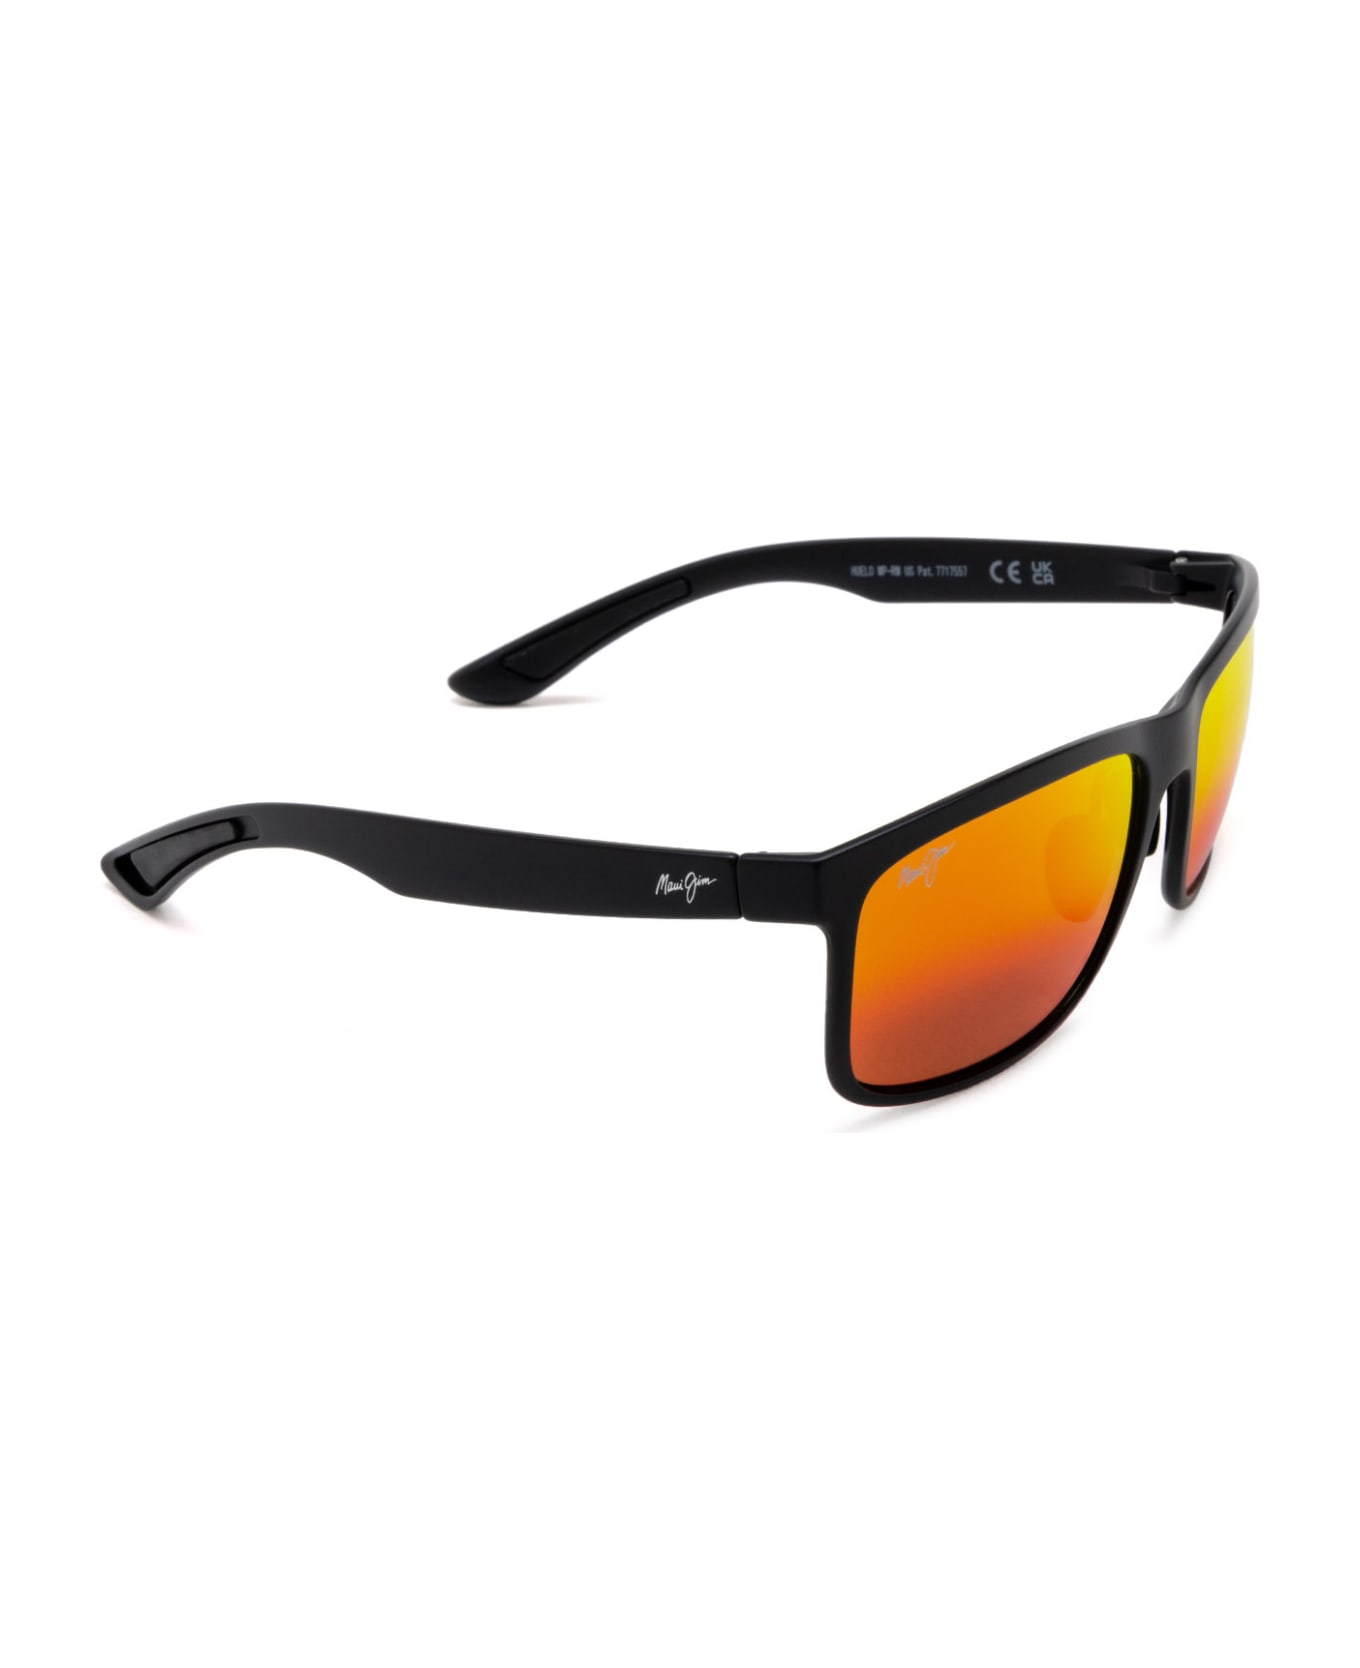 Maui Jim Mj449 Matte Black Sunglasses - Matte Black